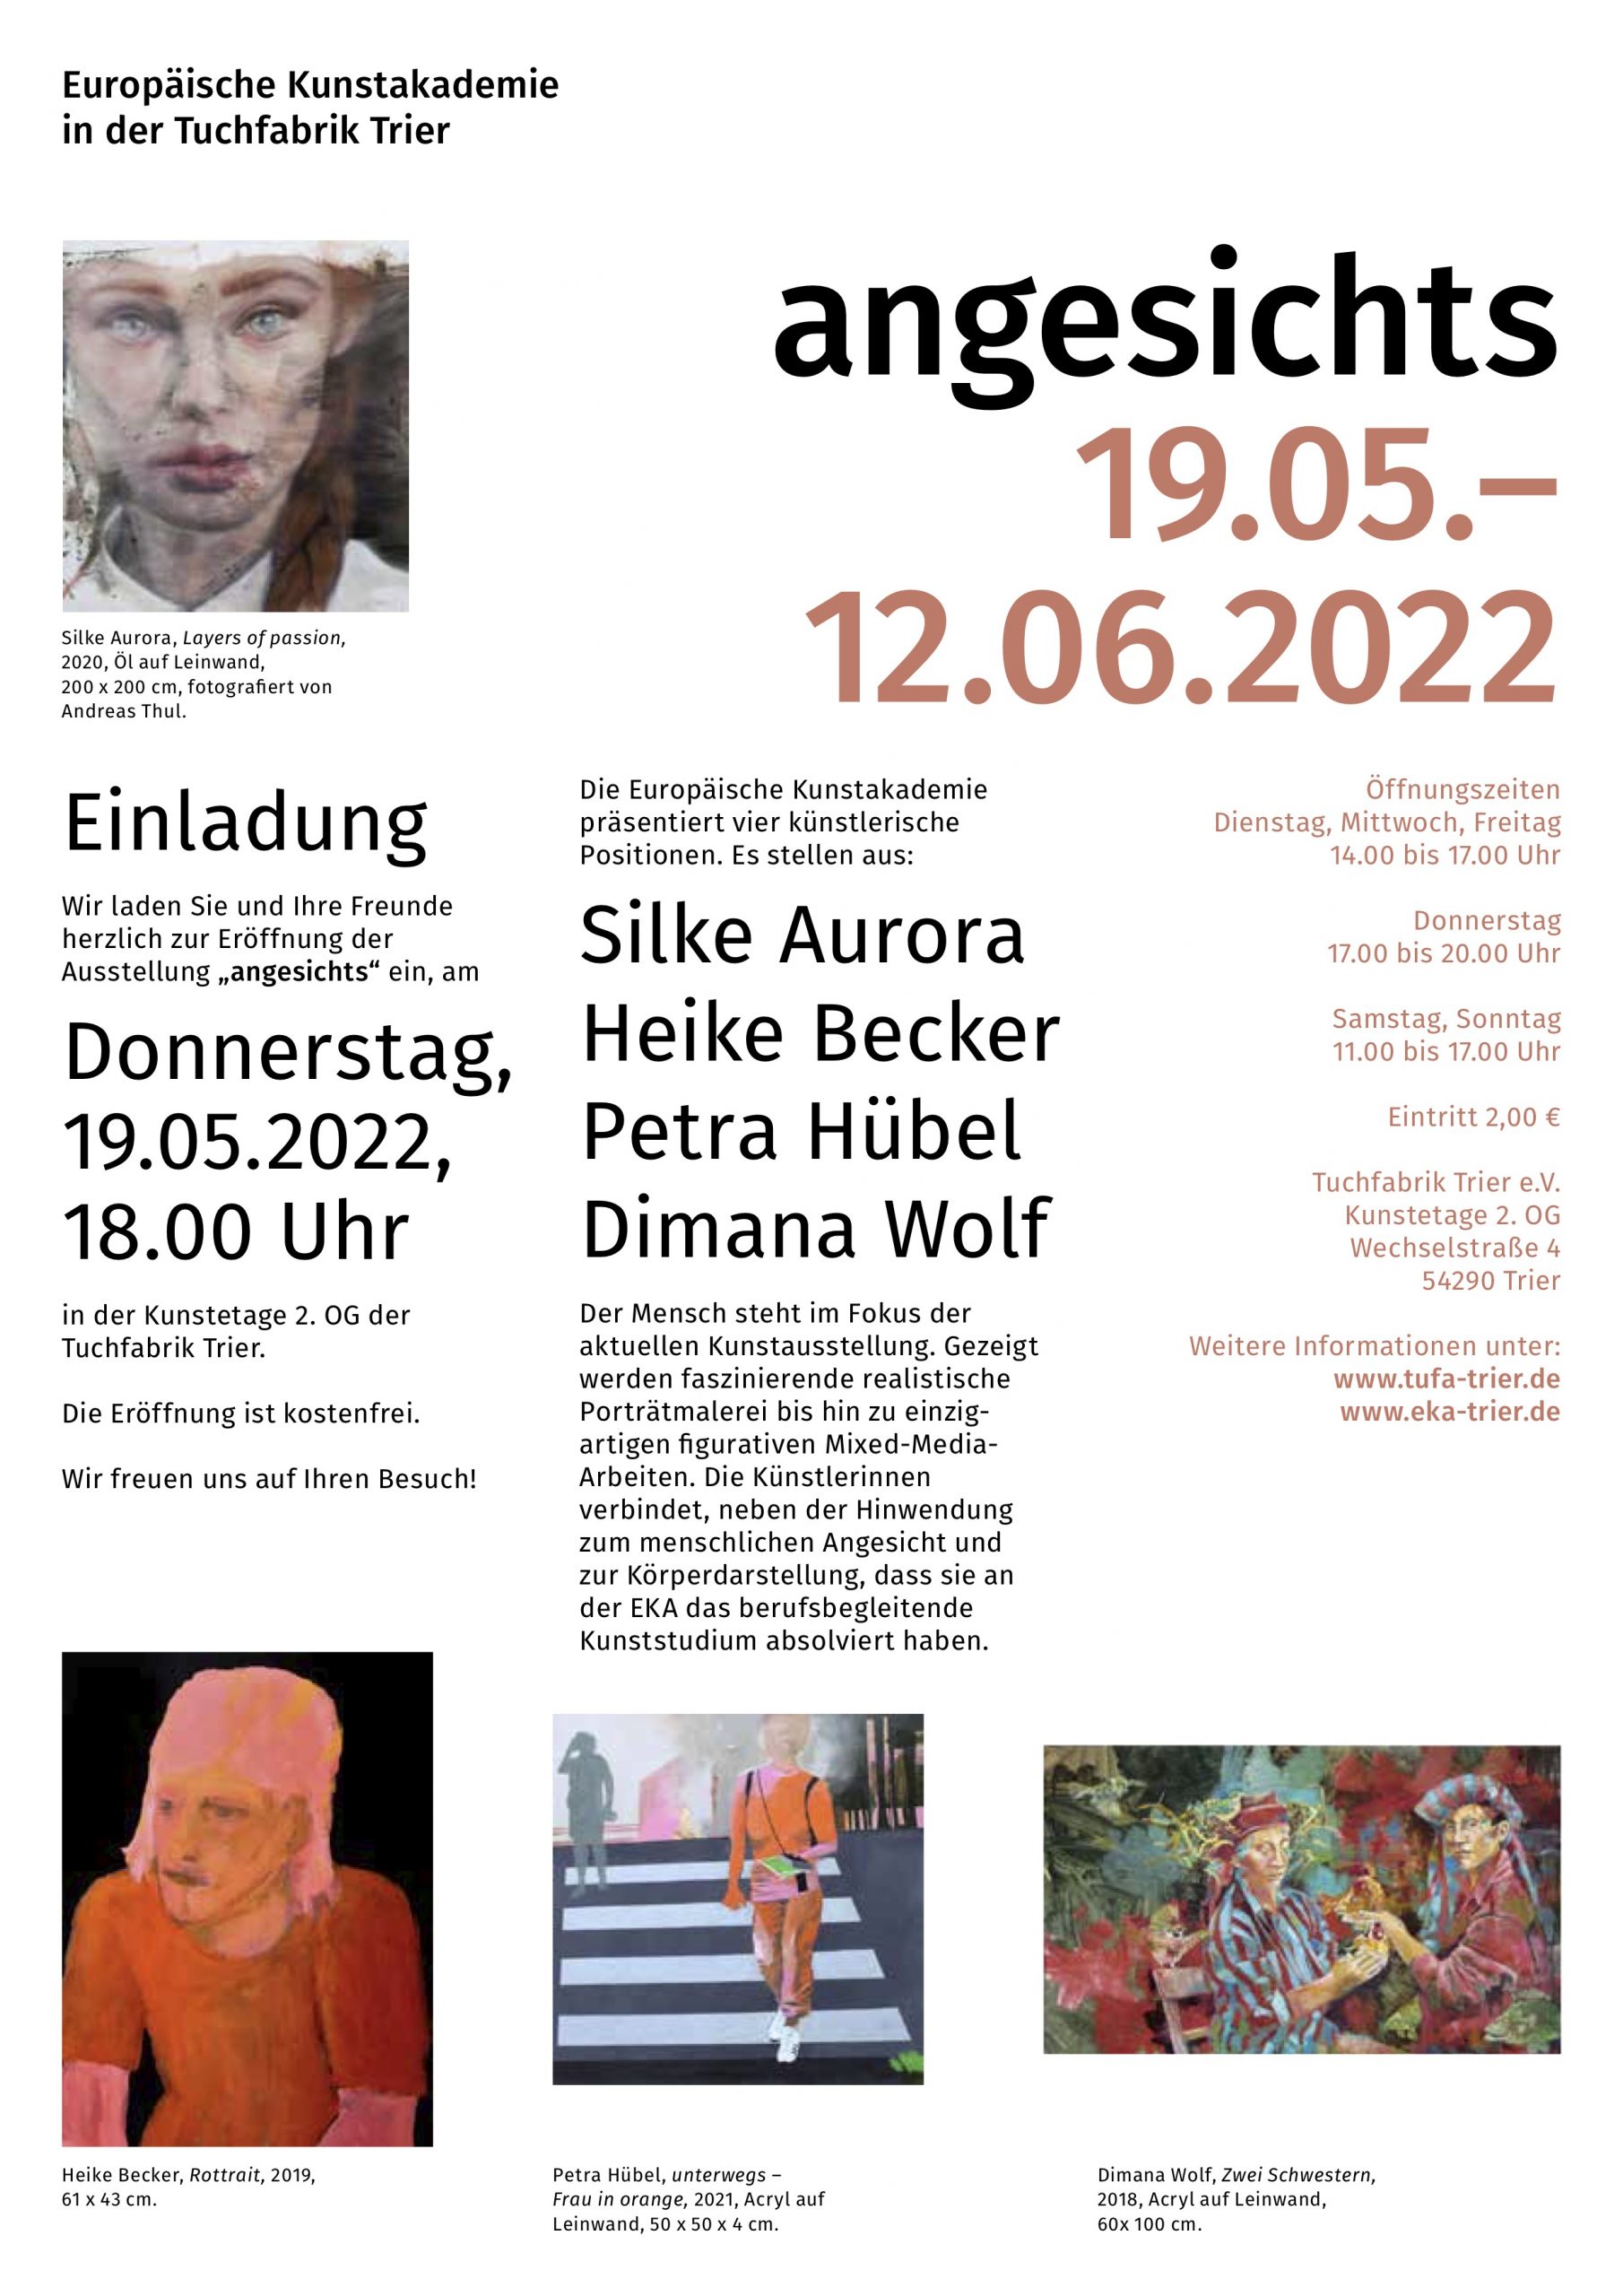 Ausstellungsplakat zur Ausstellung angesichts in Trier mit Werk von Heike Becker